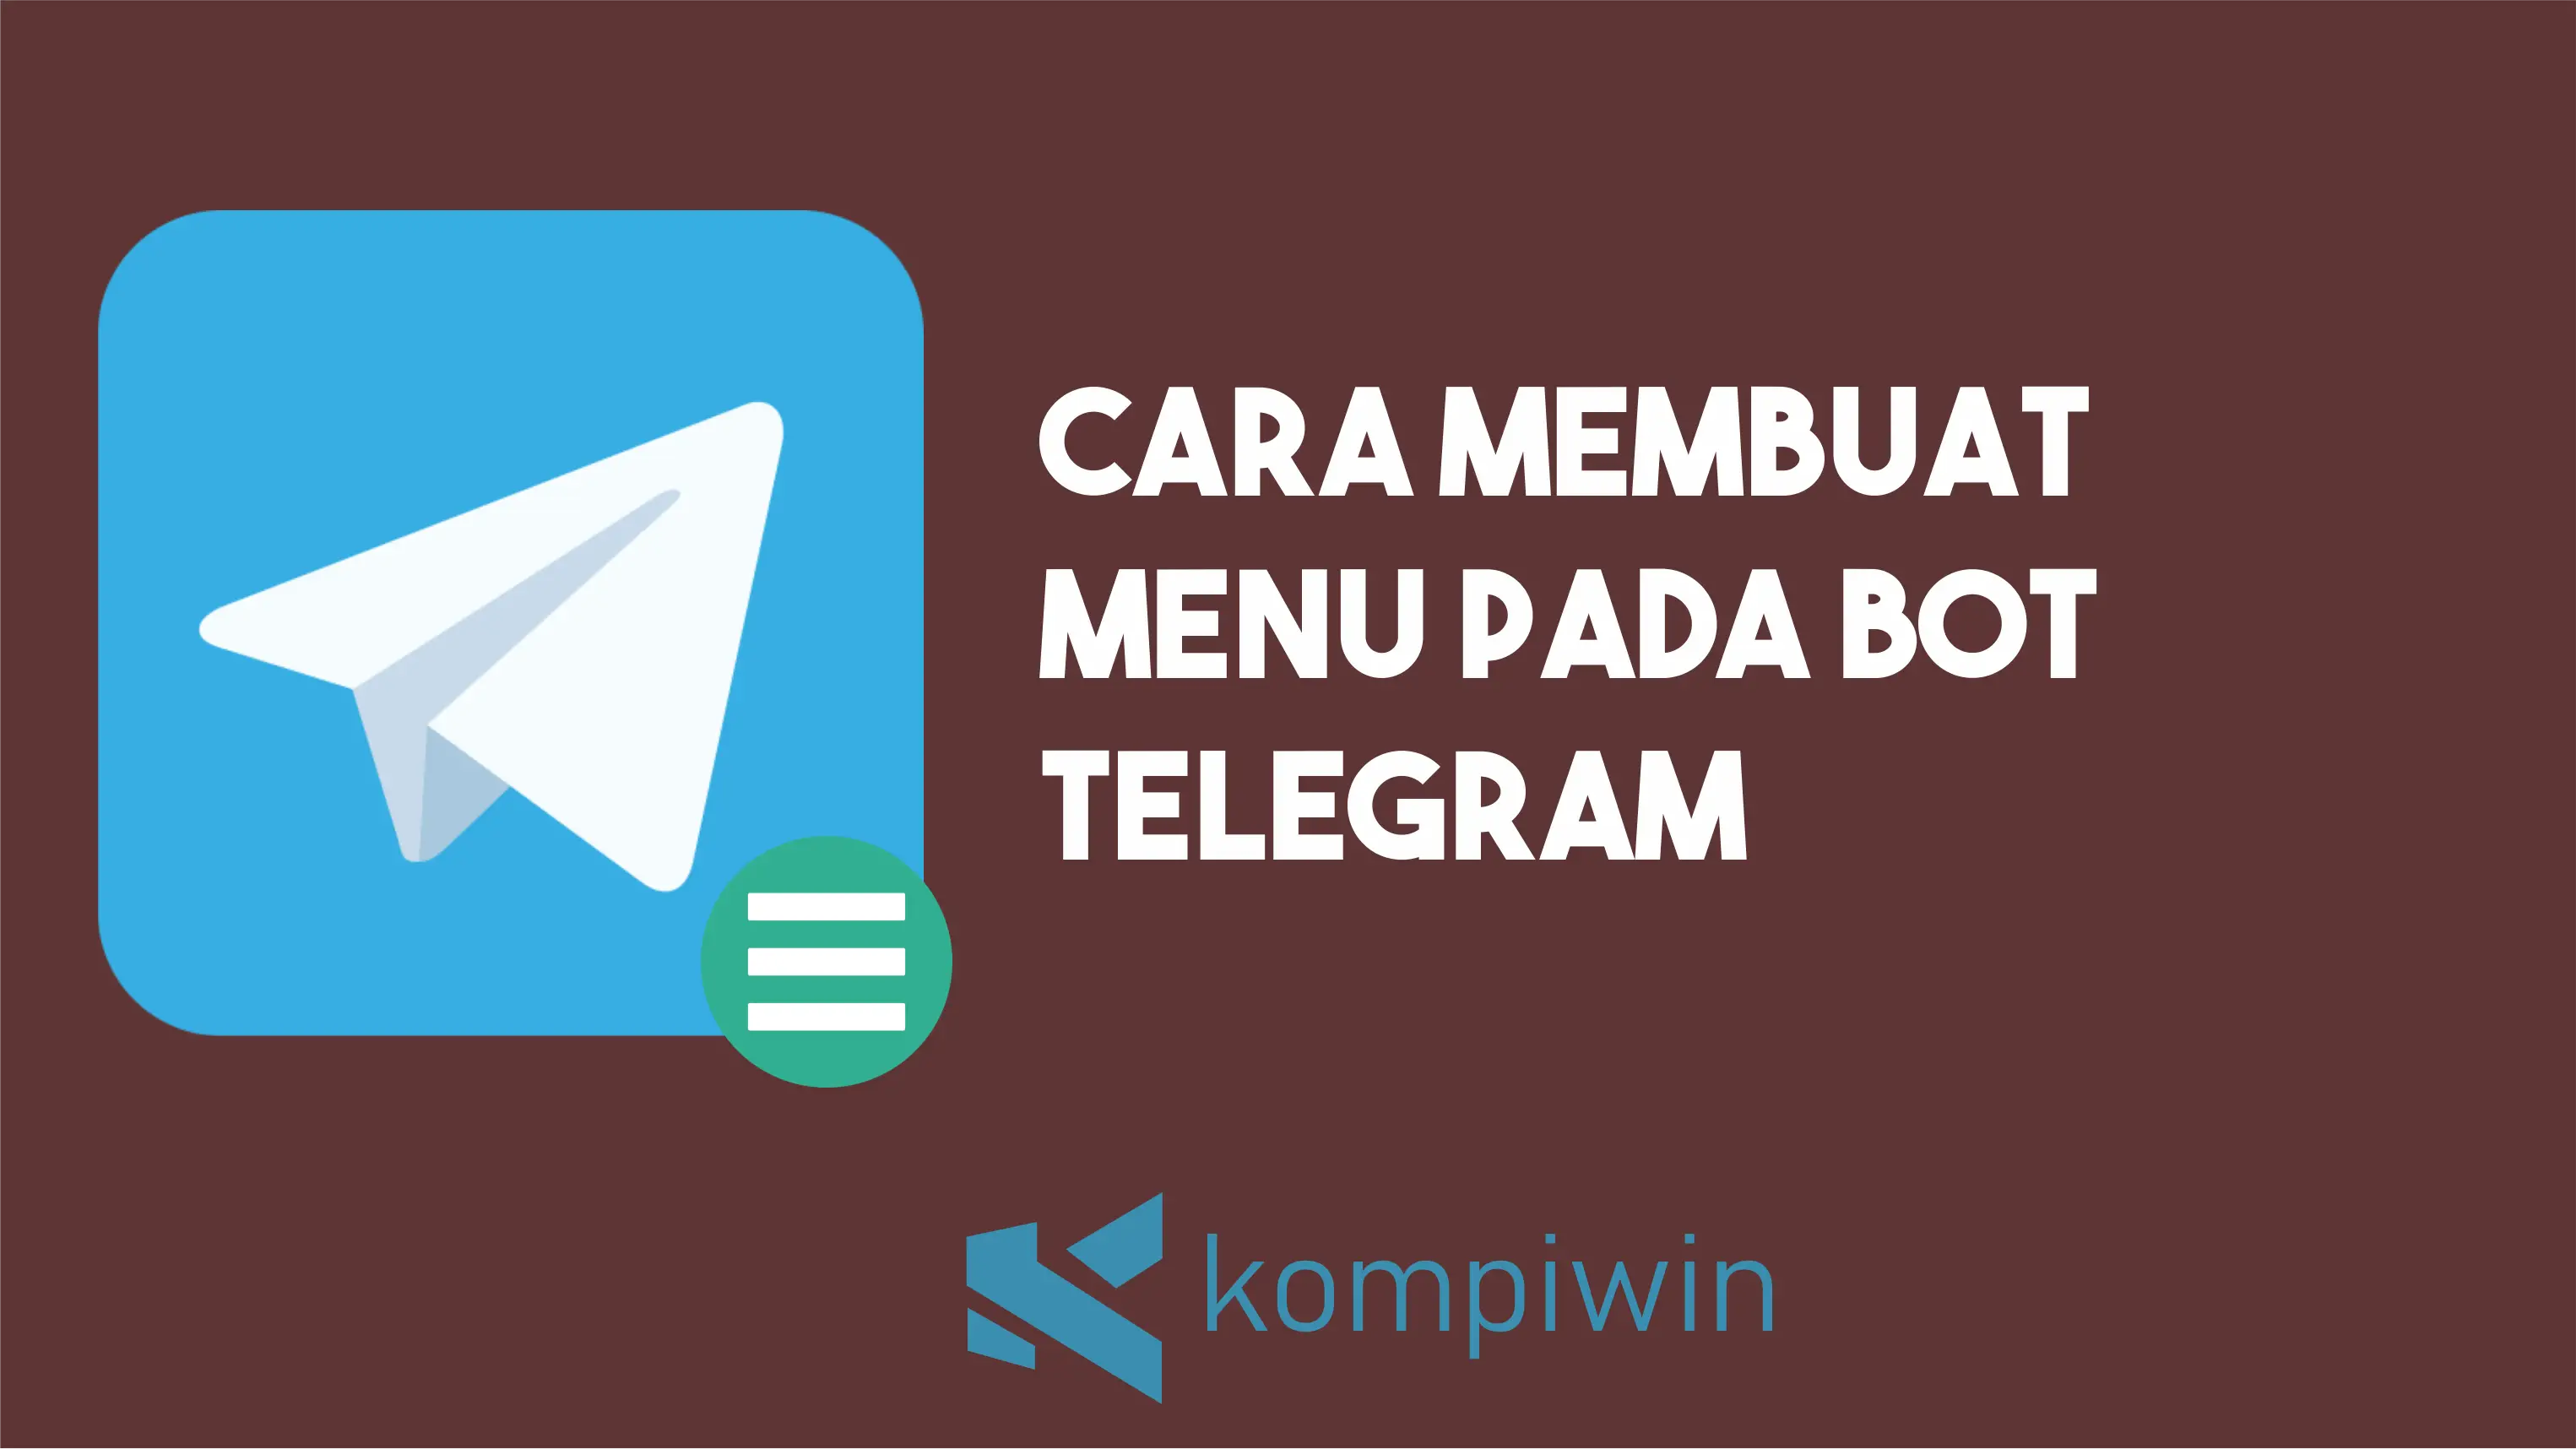 Cara Membuat Menu Pada Bot Telegram